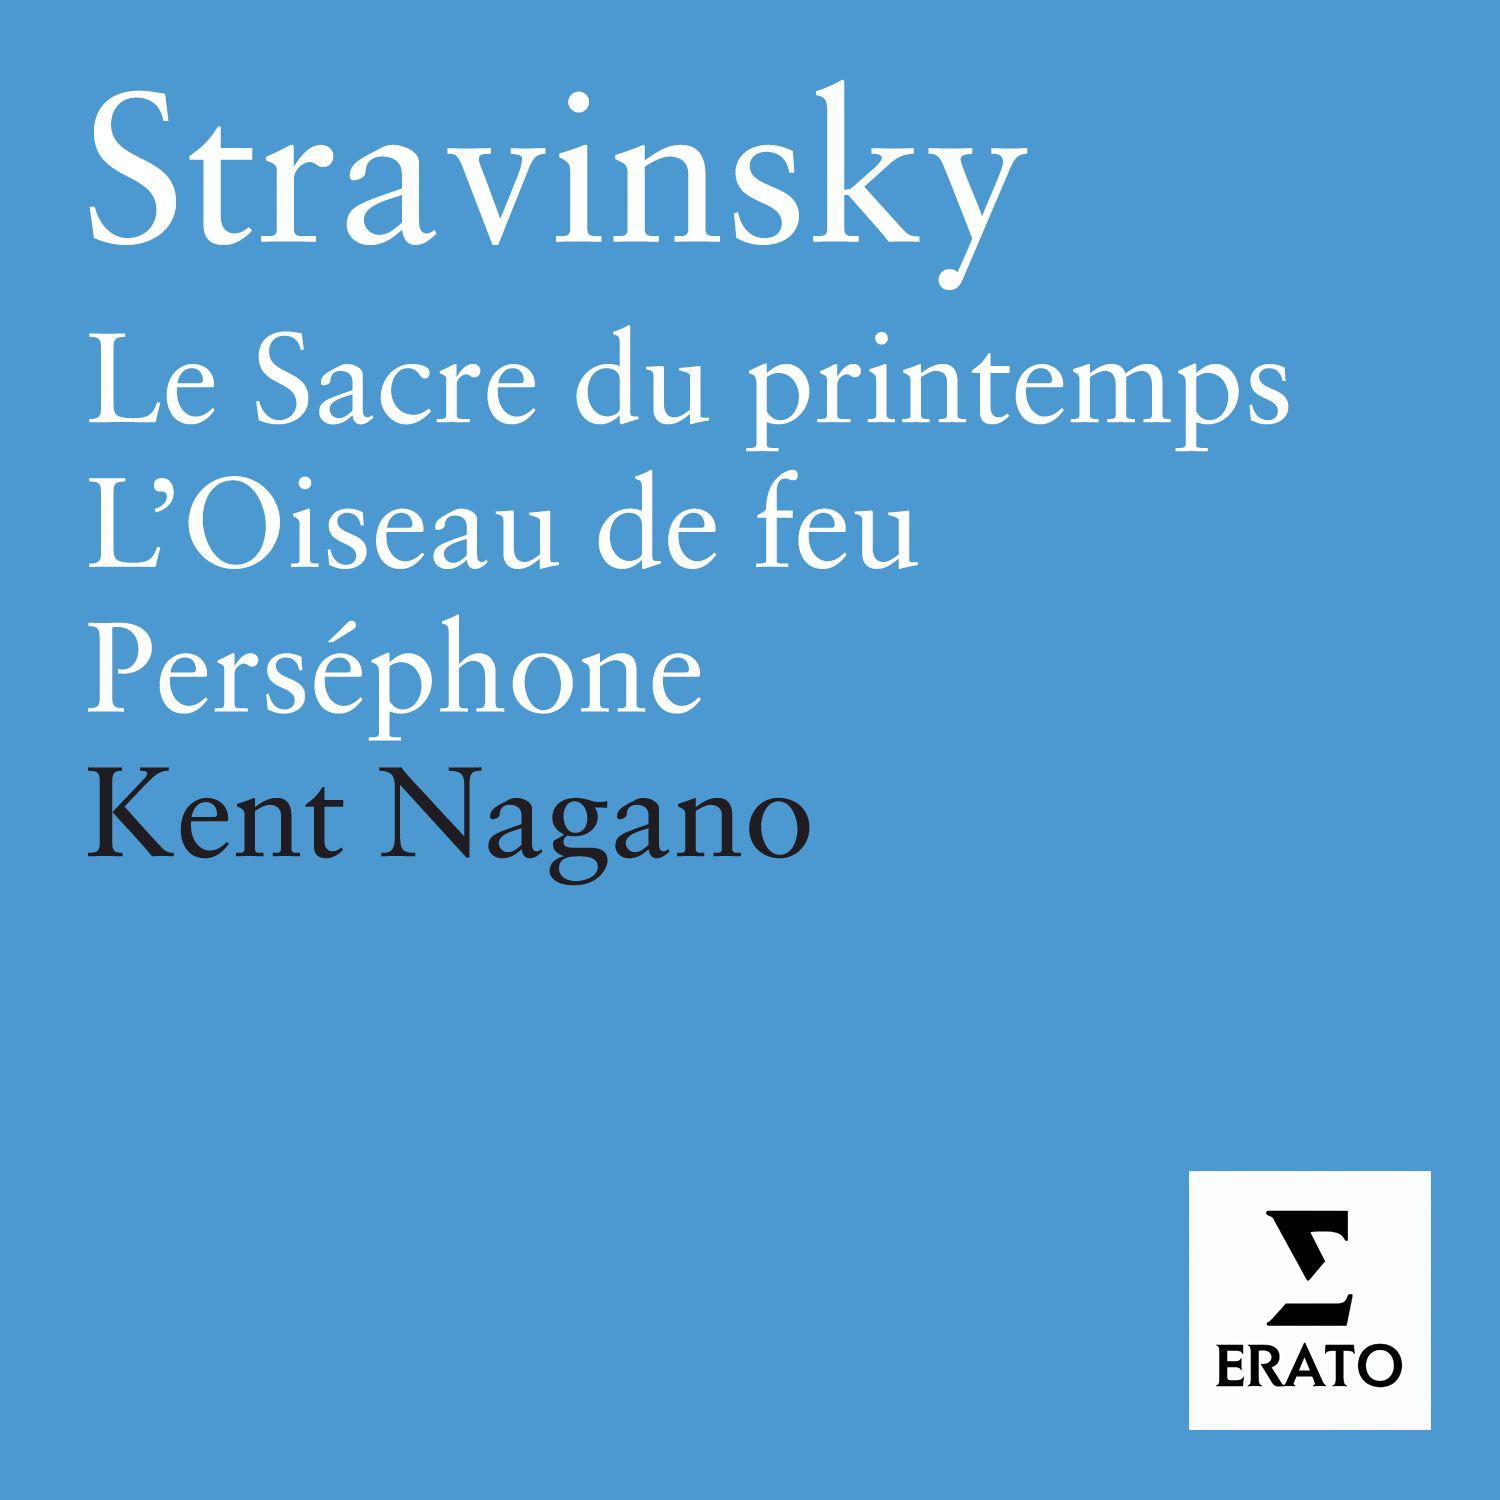 Stravinsky: Le Sacre du Printemps, L' Oiseau de Jeu, Perse phone, Symphonies d' instruments a vent